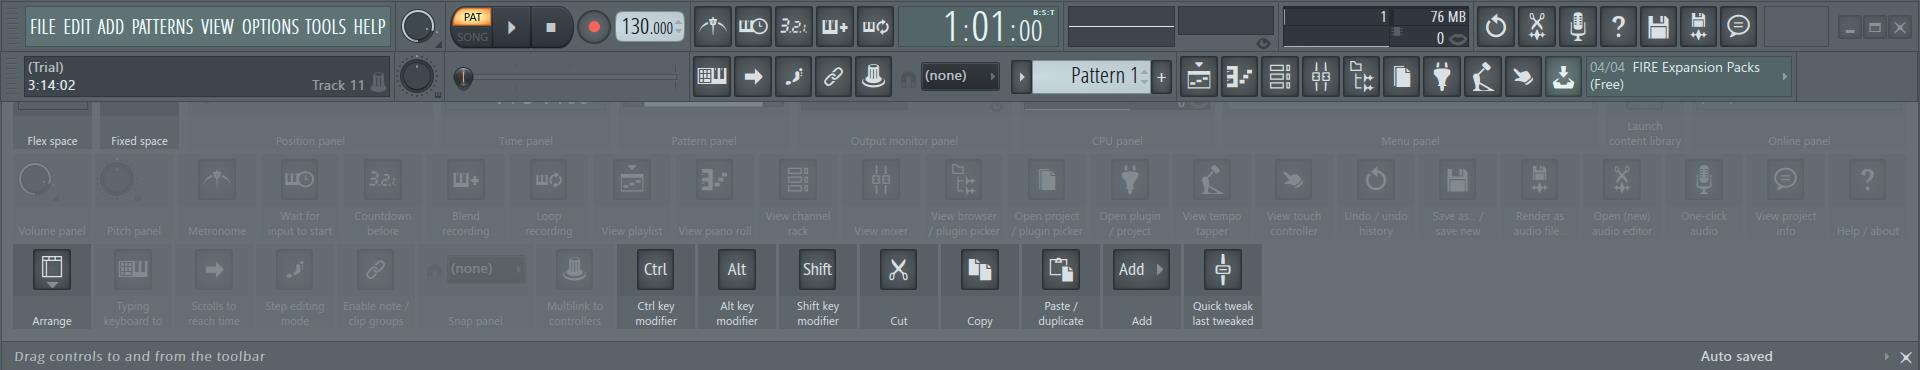 FL Studio 20官网正式版